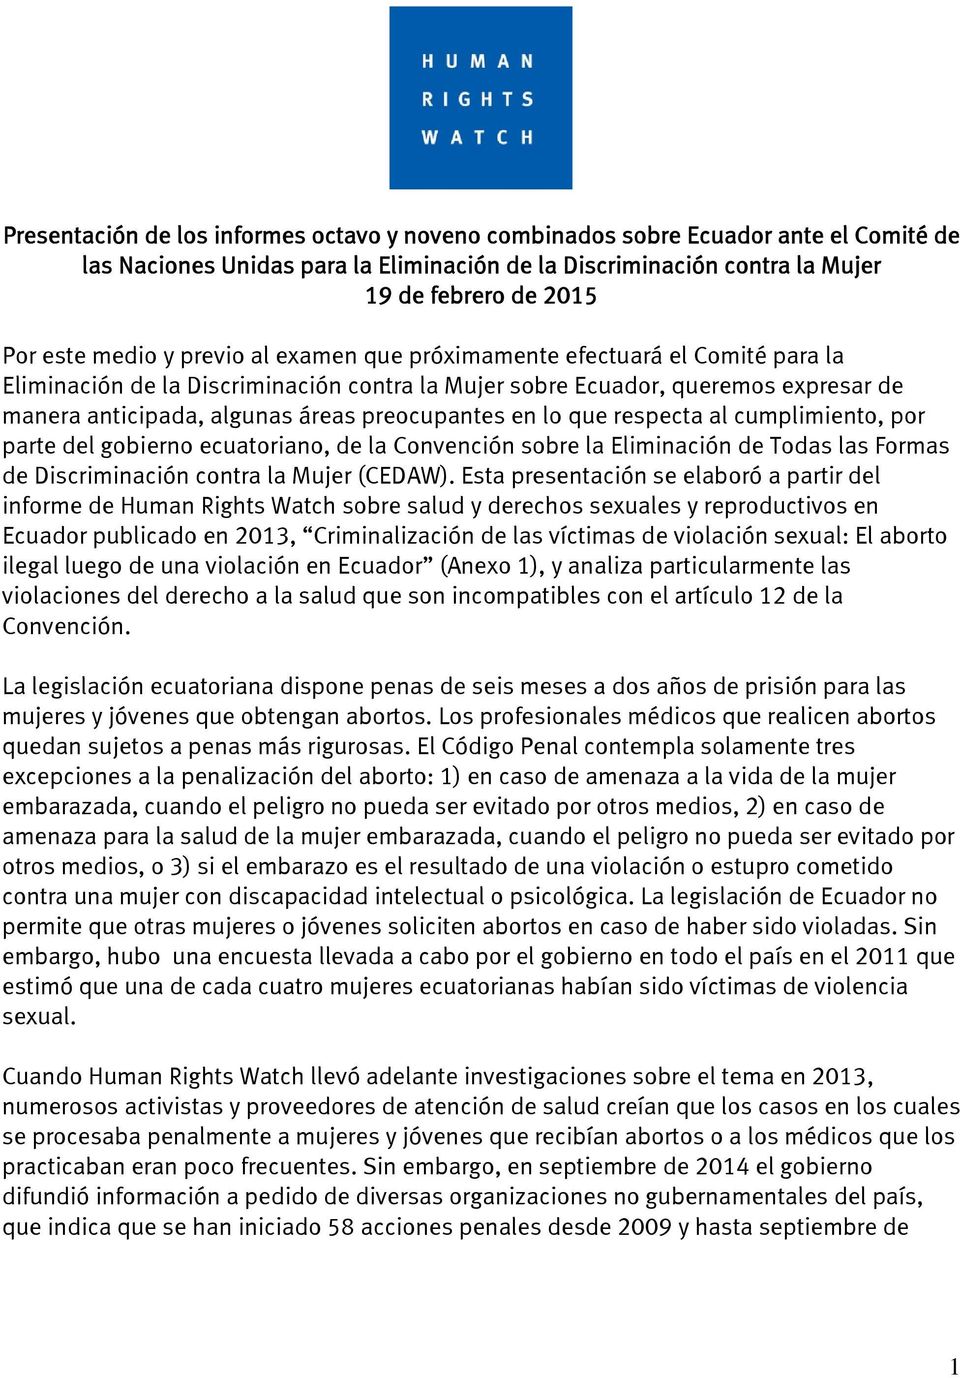 preocupantes en lo que respecta al cumplimiento, por parte del gobierno ecuatoriano, de la Convención sobre la Eliminación de Todas las Formas de Discriminación contra la Mujer (CEDAW).